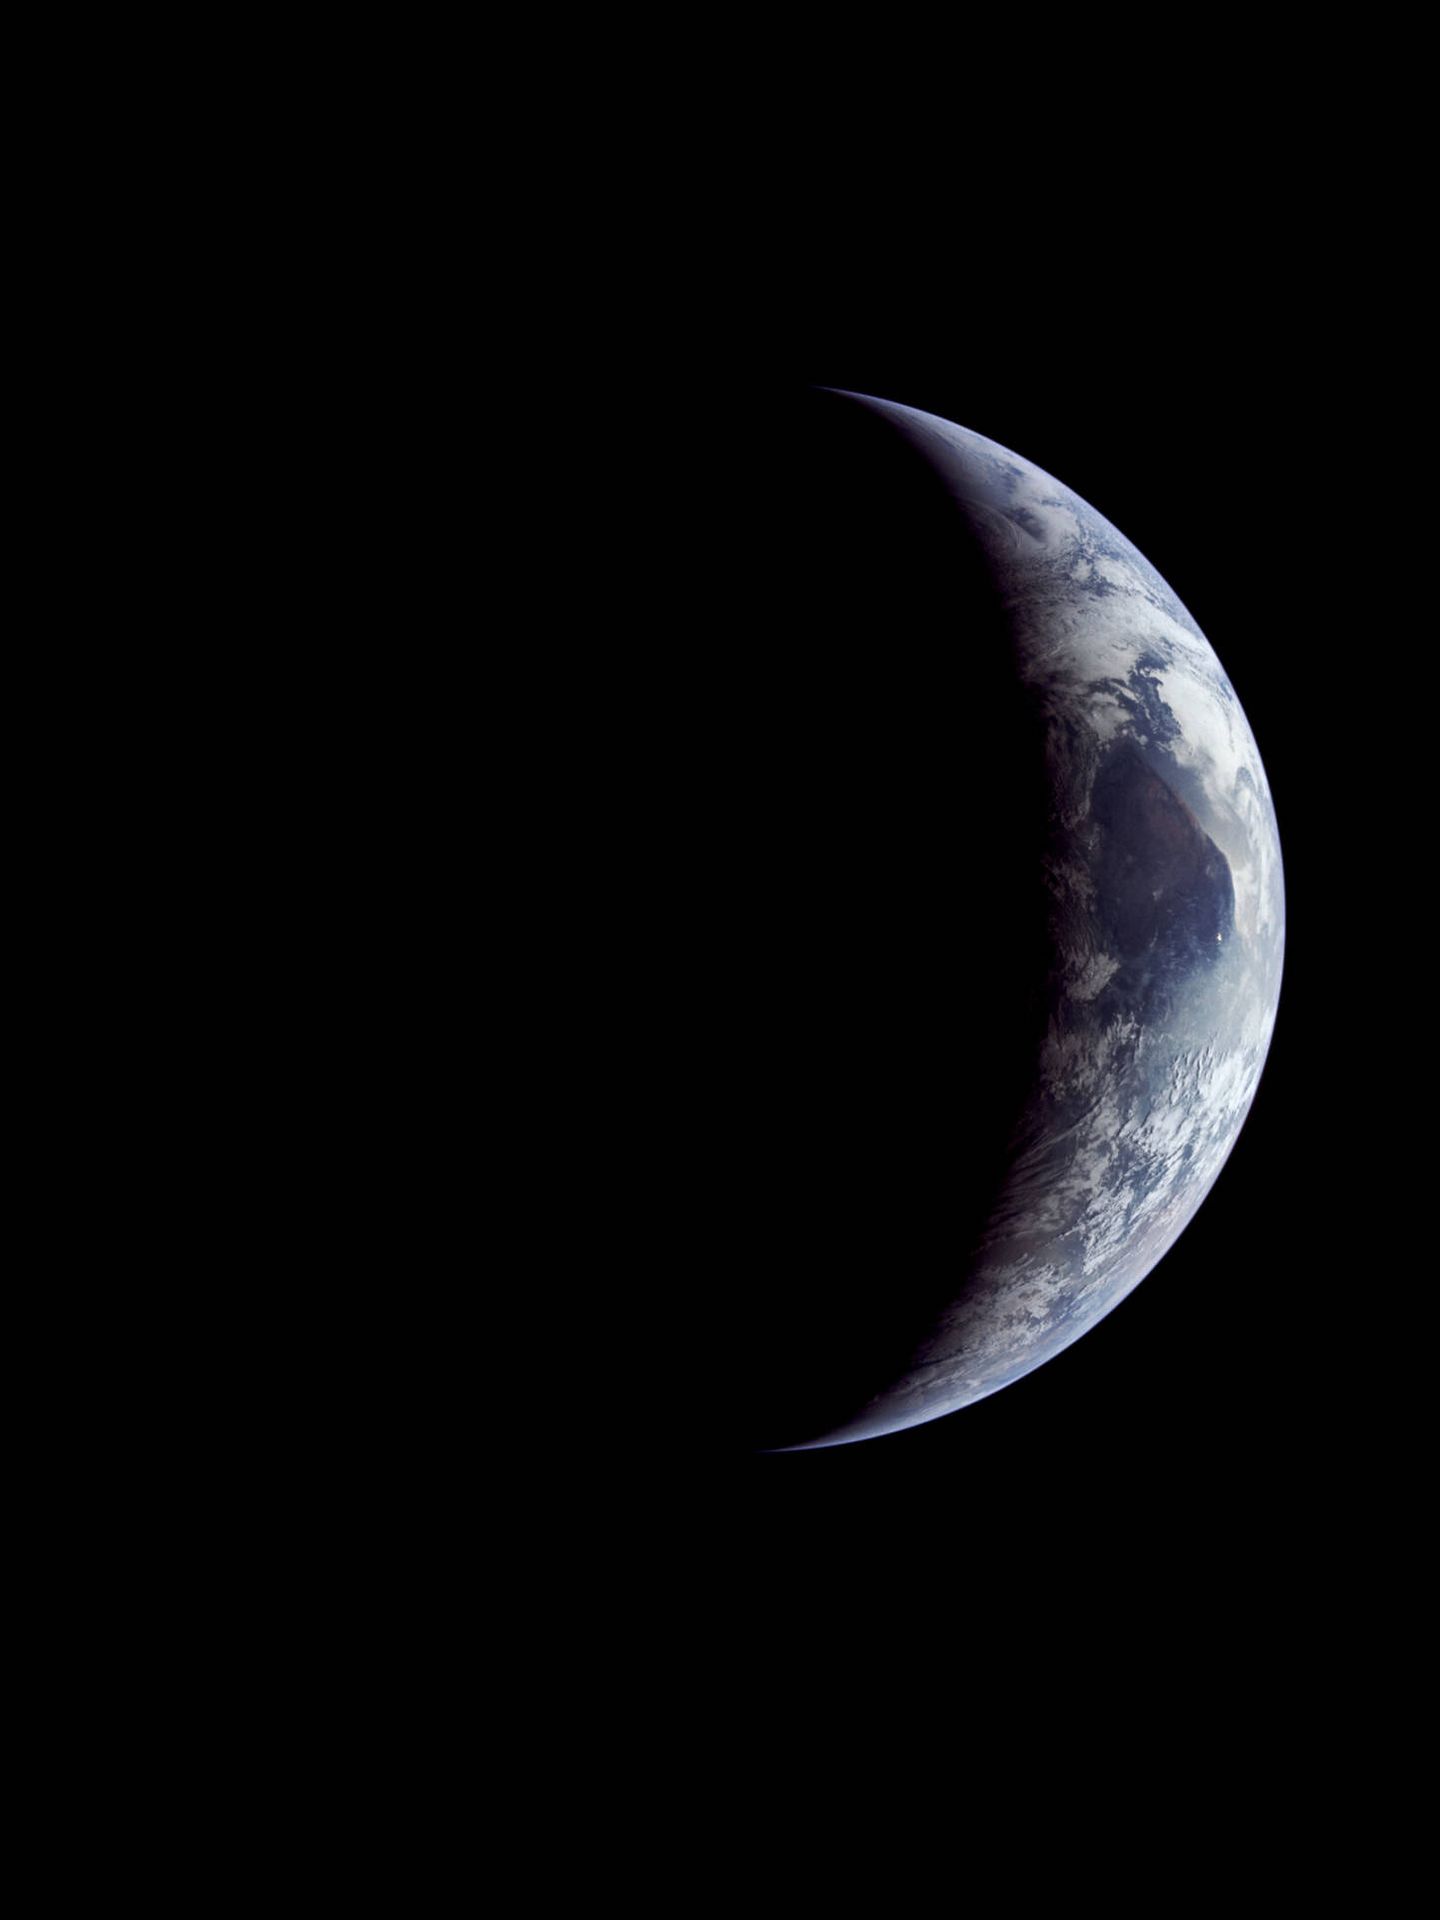 Apolo 11: Curiosamente, la sensación predominante que tuve al mirar la Tierra fue: 'Dios mío, esa pequeña cosa es tan frágil ahí fuera' - Michael Collins.